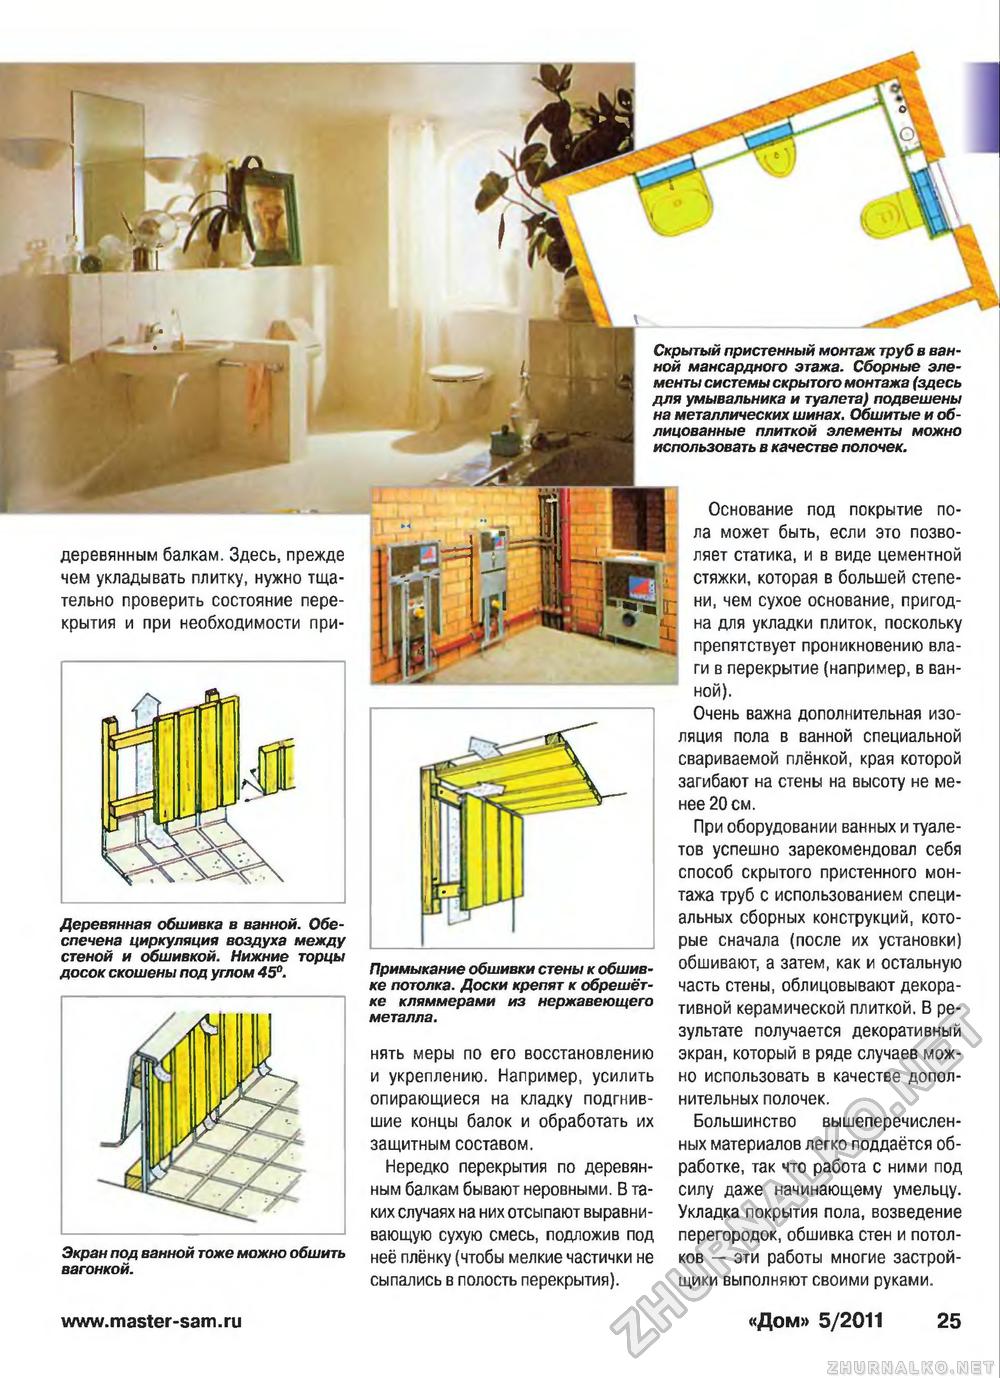 Дом 2011-05, страница 25